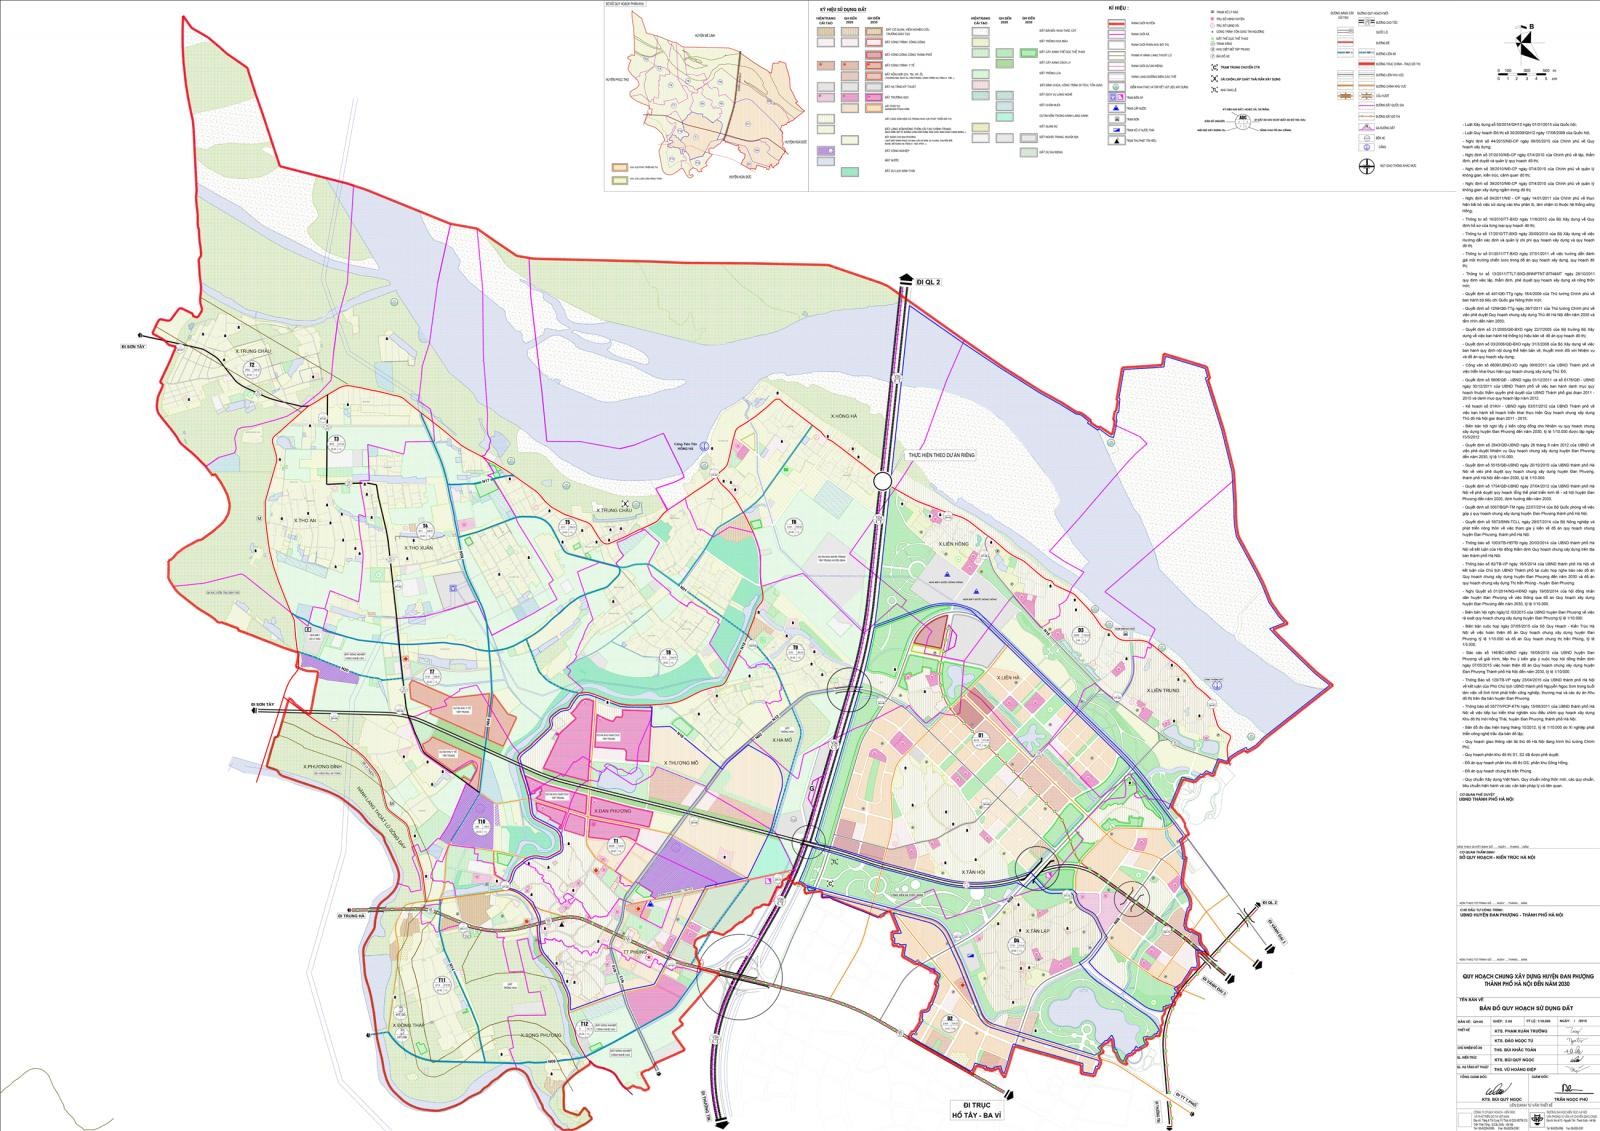 
Hình ảnh bản đồ quy hoạch sử dụng đất huyện Đan Phượng
